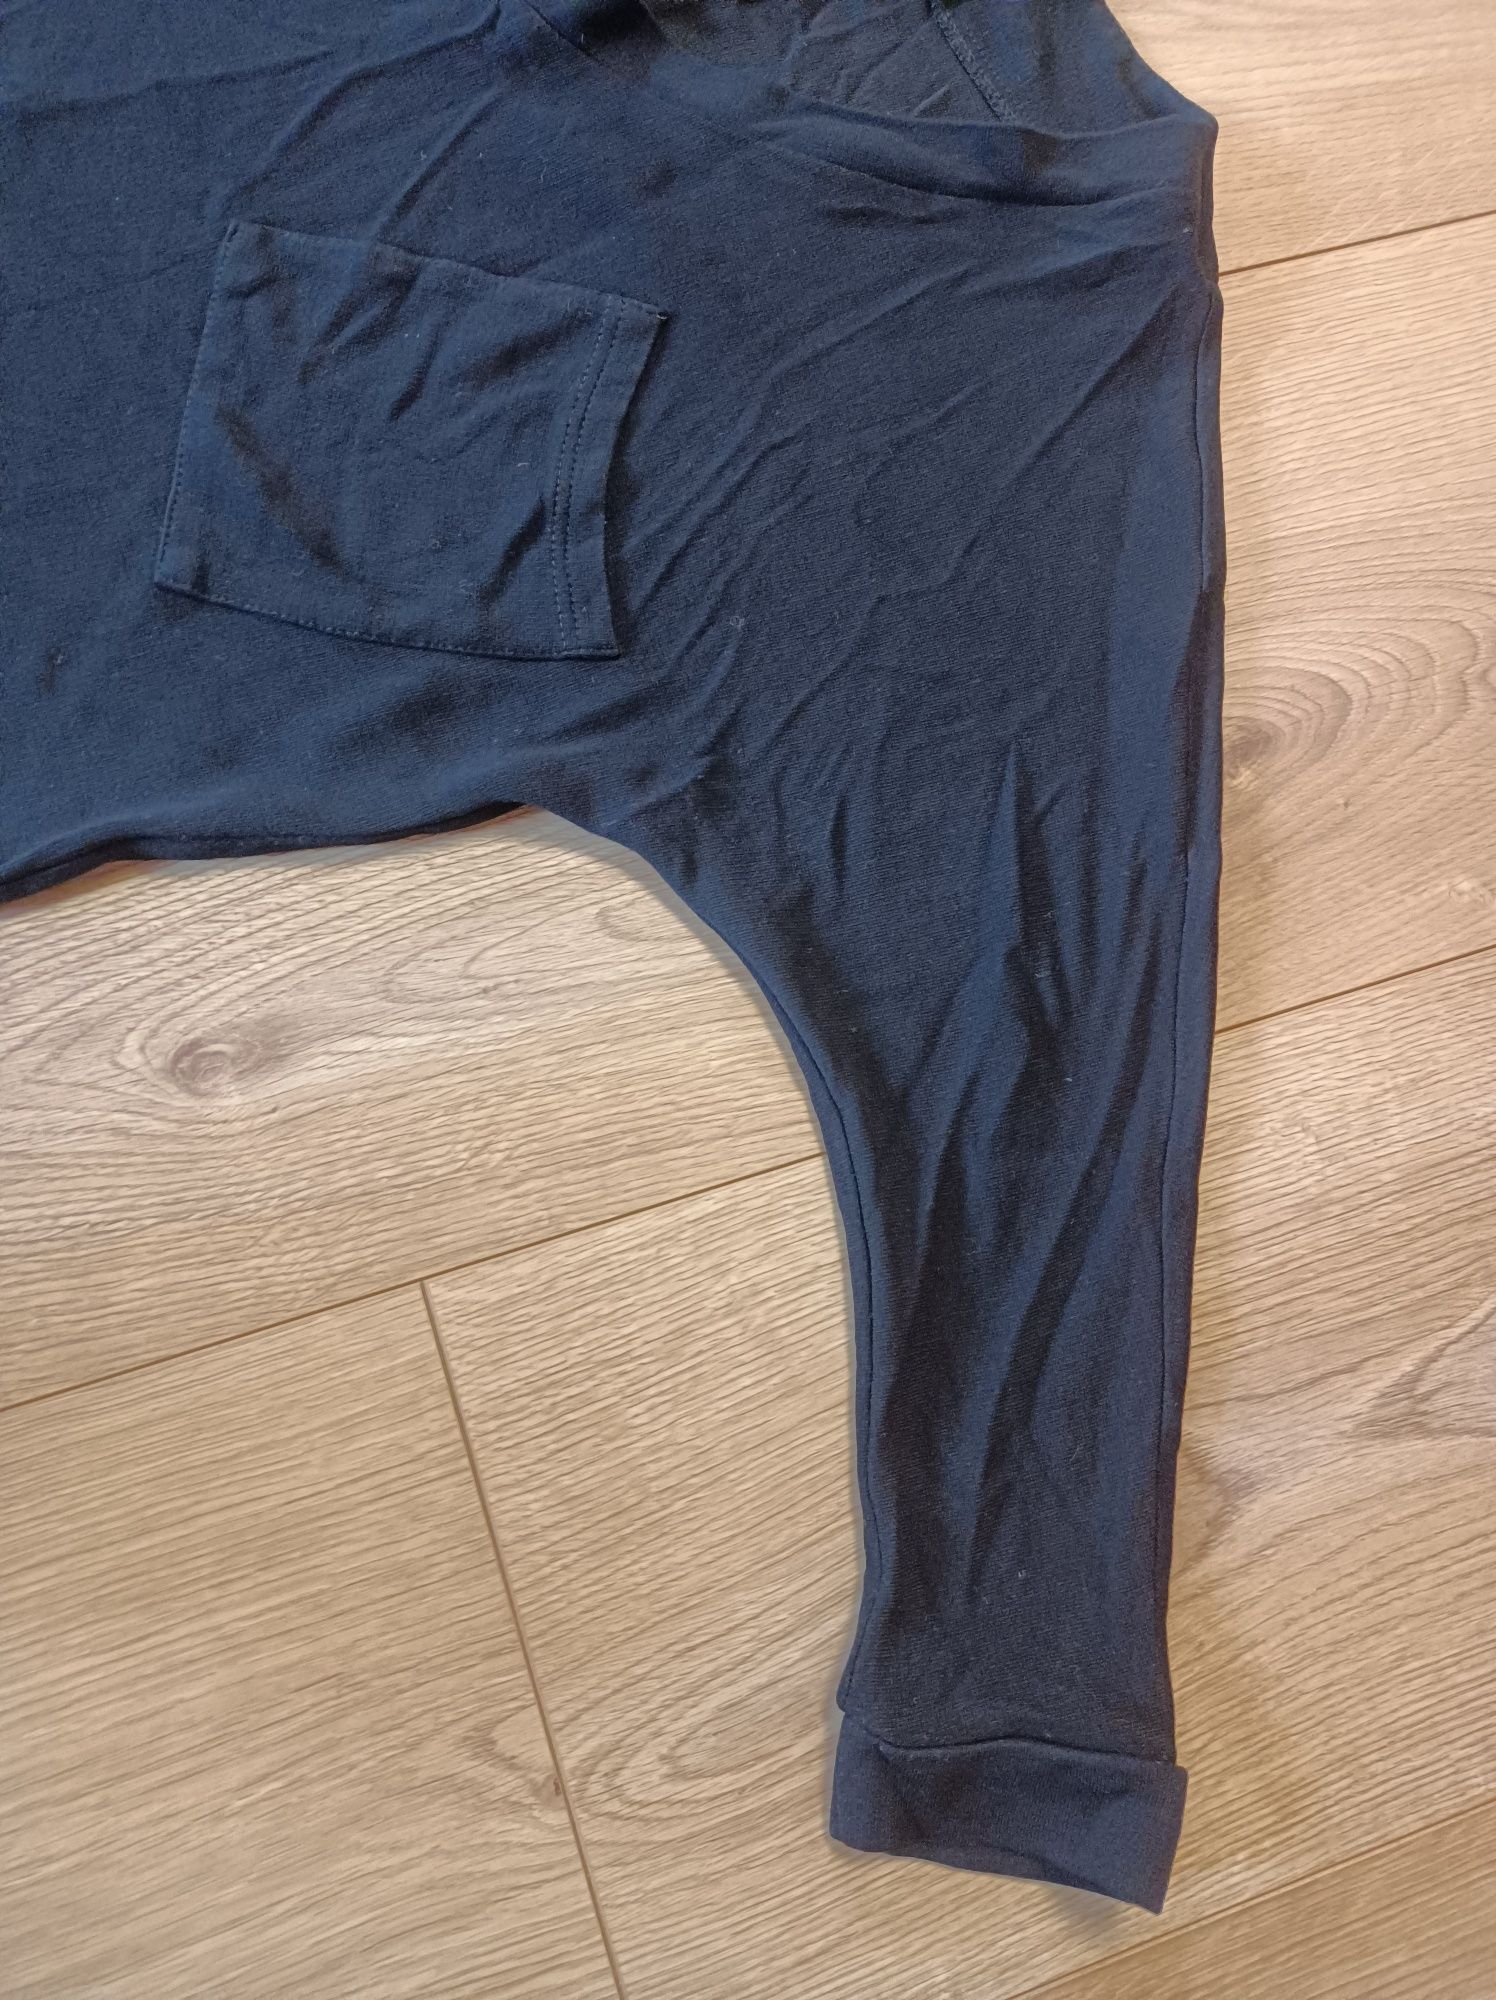 Bluza bluzka damska czarna oversize sportowa kieszeń rozmiar 38-40 M-L